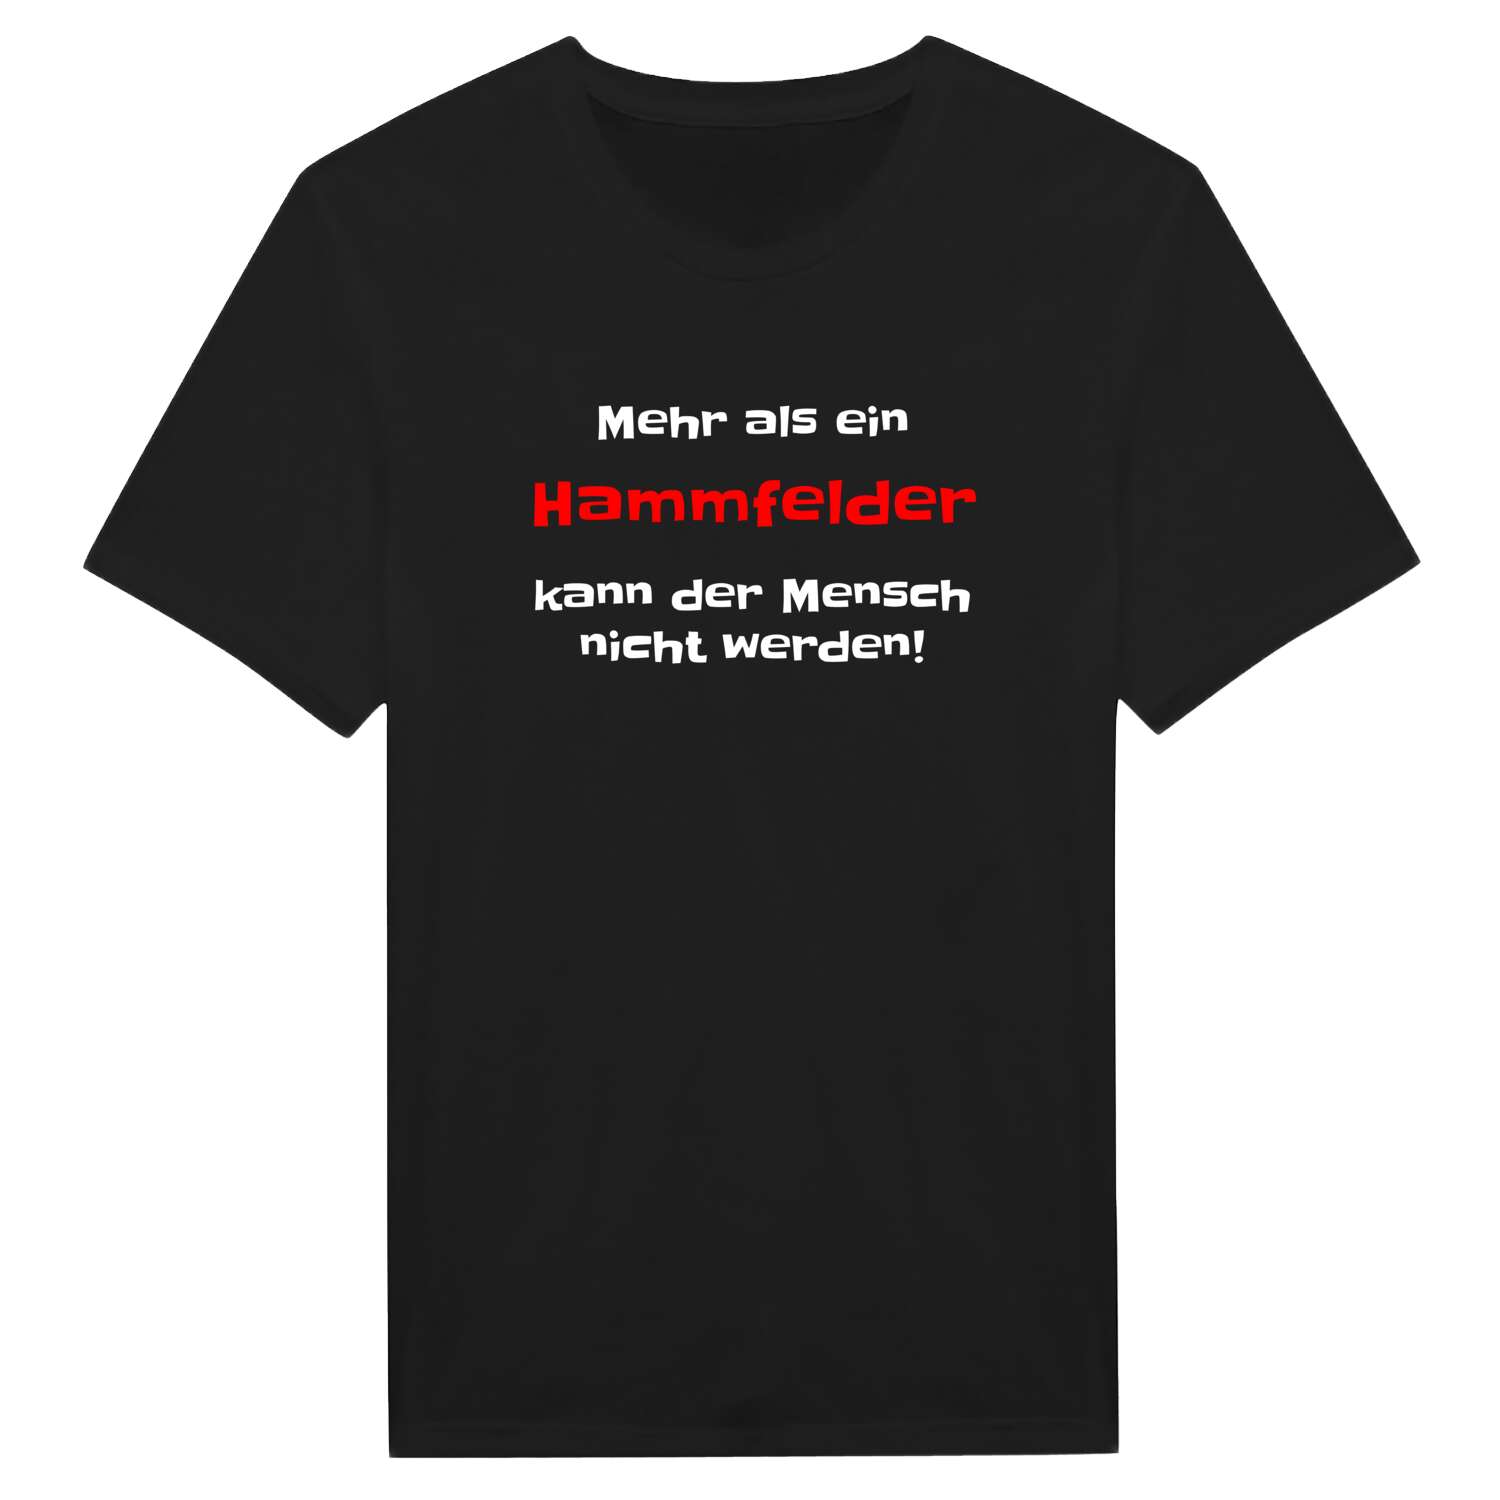 Hammfeld T-Shirt »Mehr als ein«